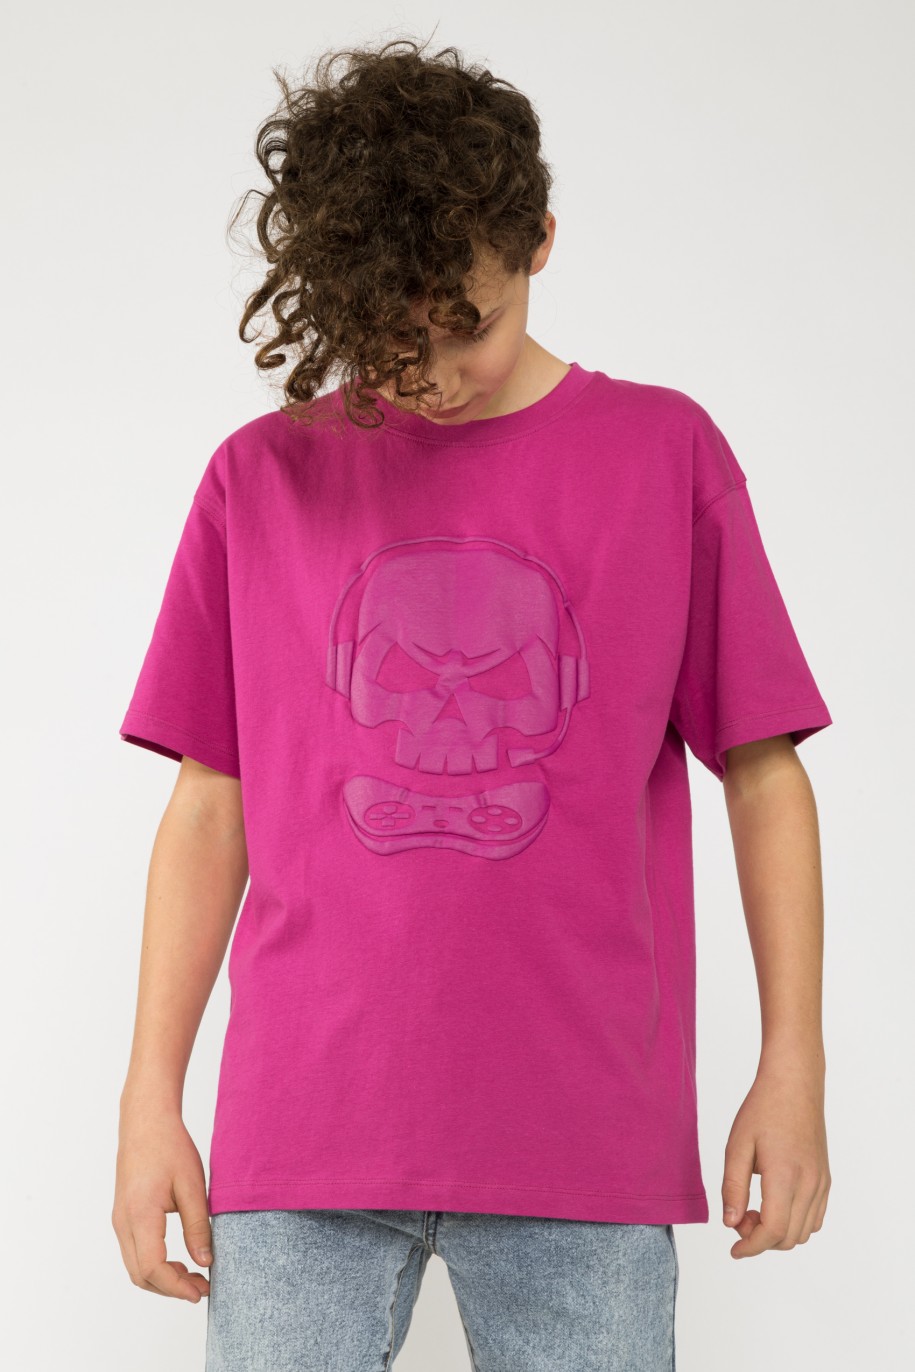 Fioletowy t-shirt z nadrukiem SKULL dla chłopaka - 33526